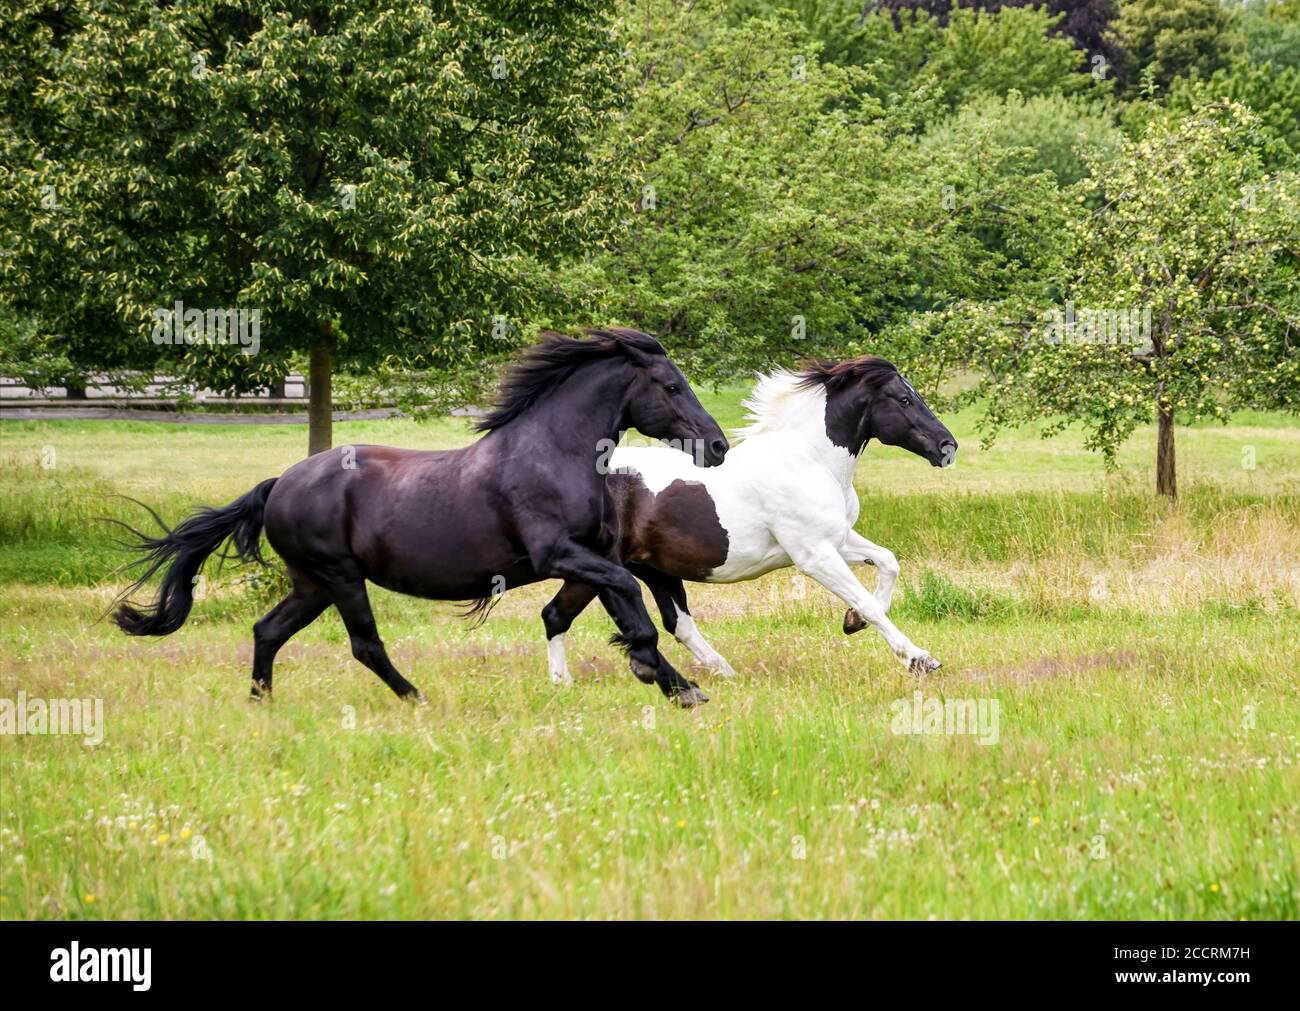 Deux chevaux femelles, de type baroque, de type barock pinto noir et noir-et-blanc à motif tobiano, courent à un galop complet dans un meado d'herbe verte Banque D'Images